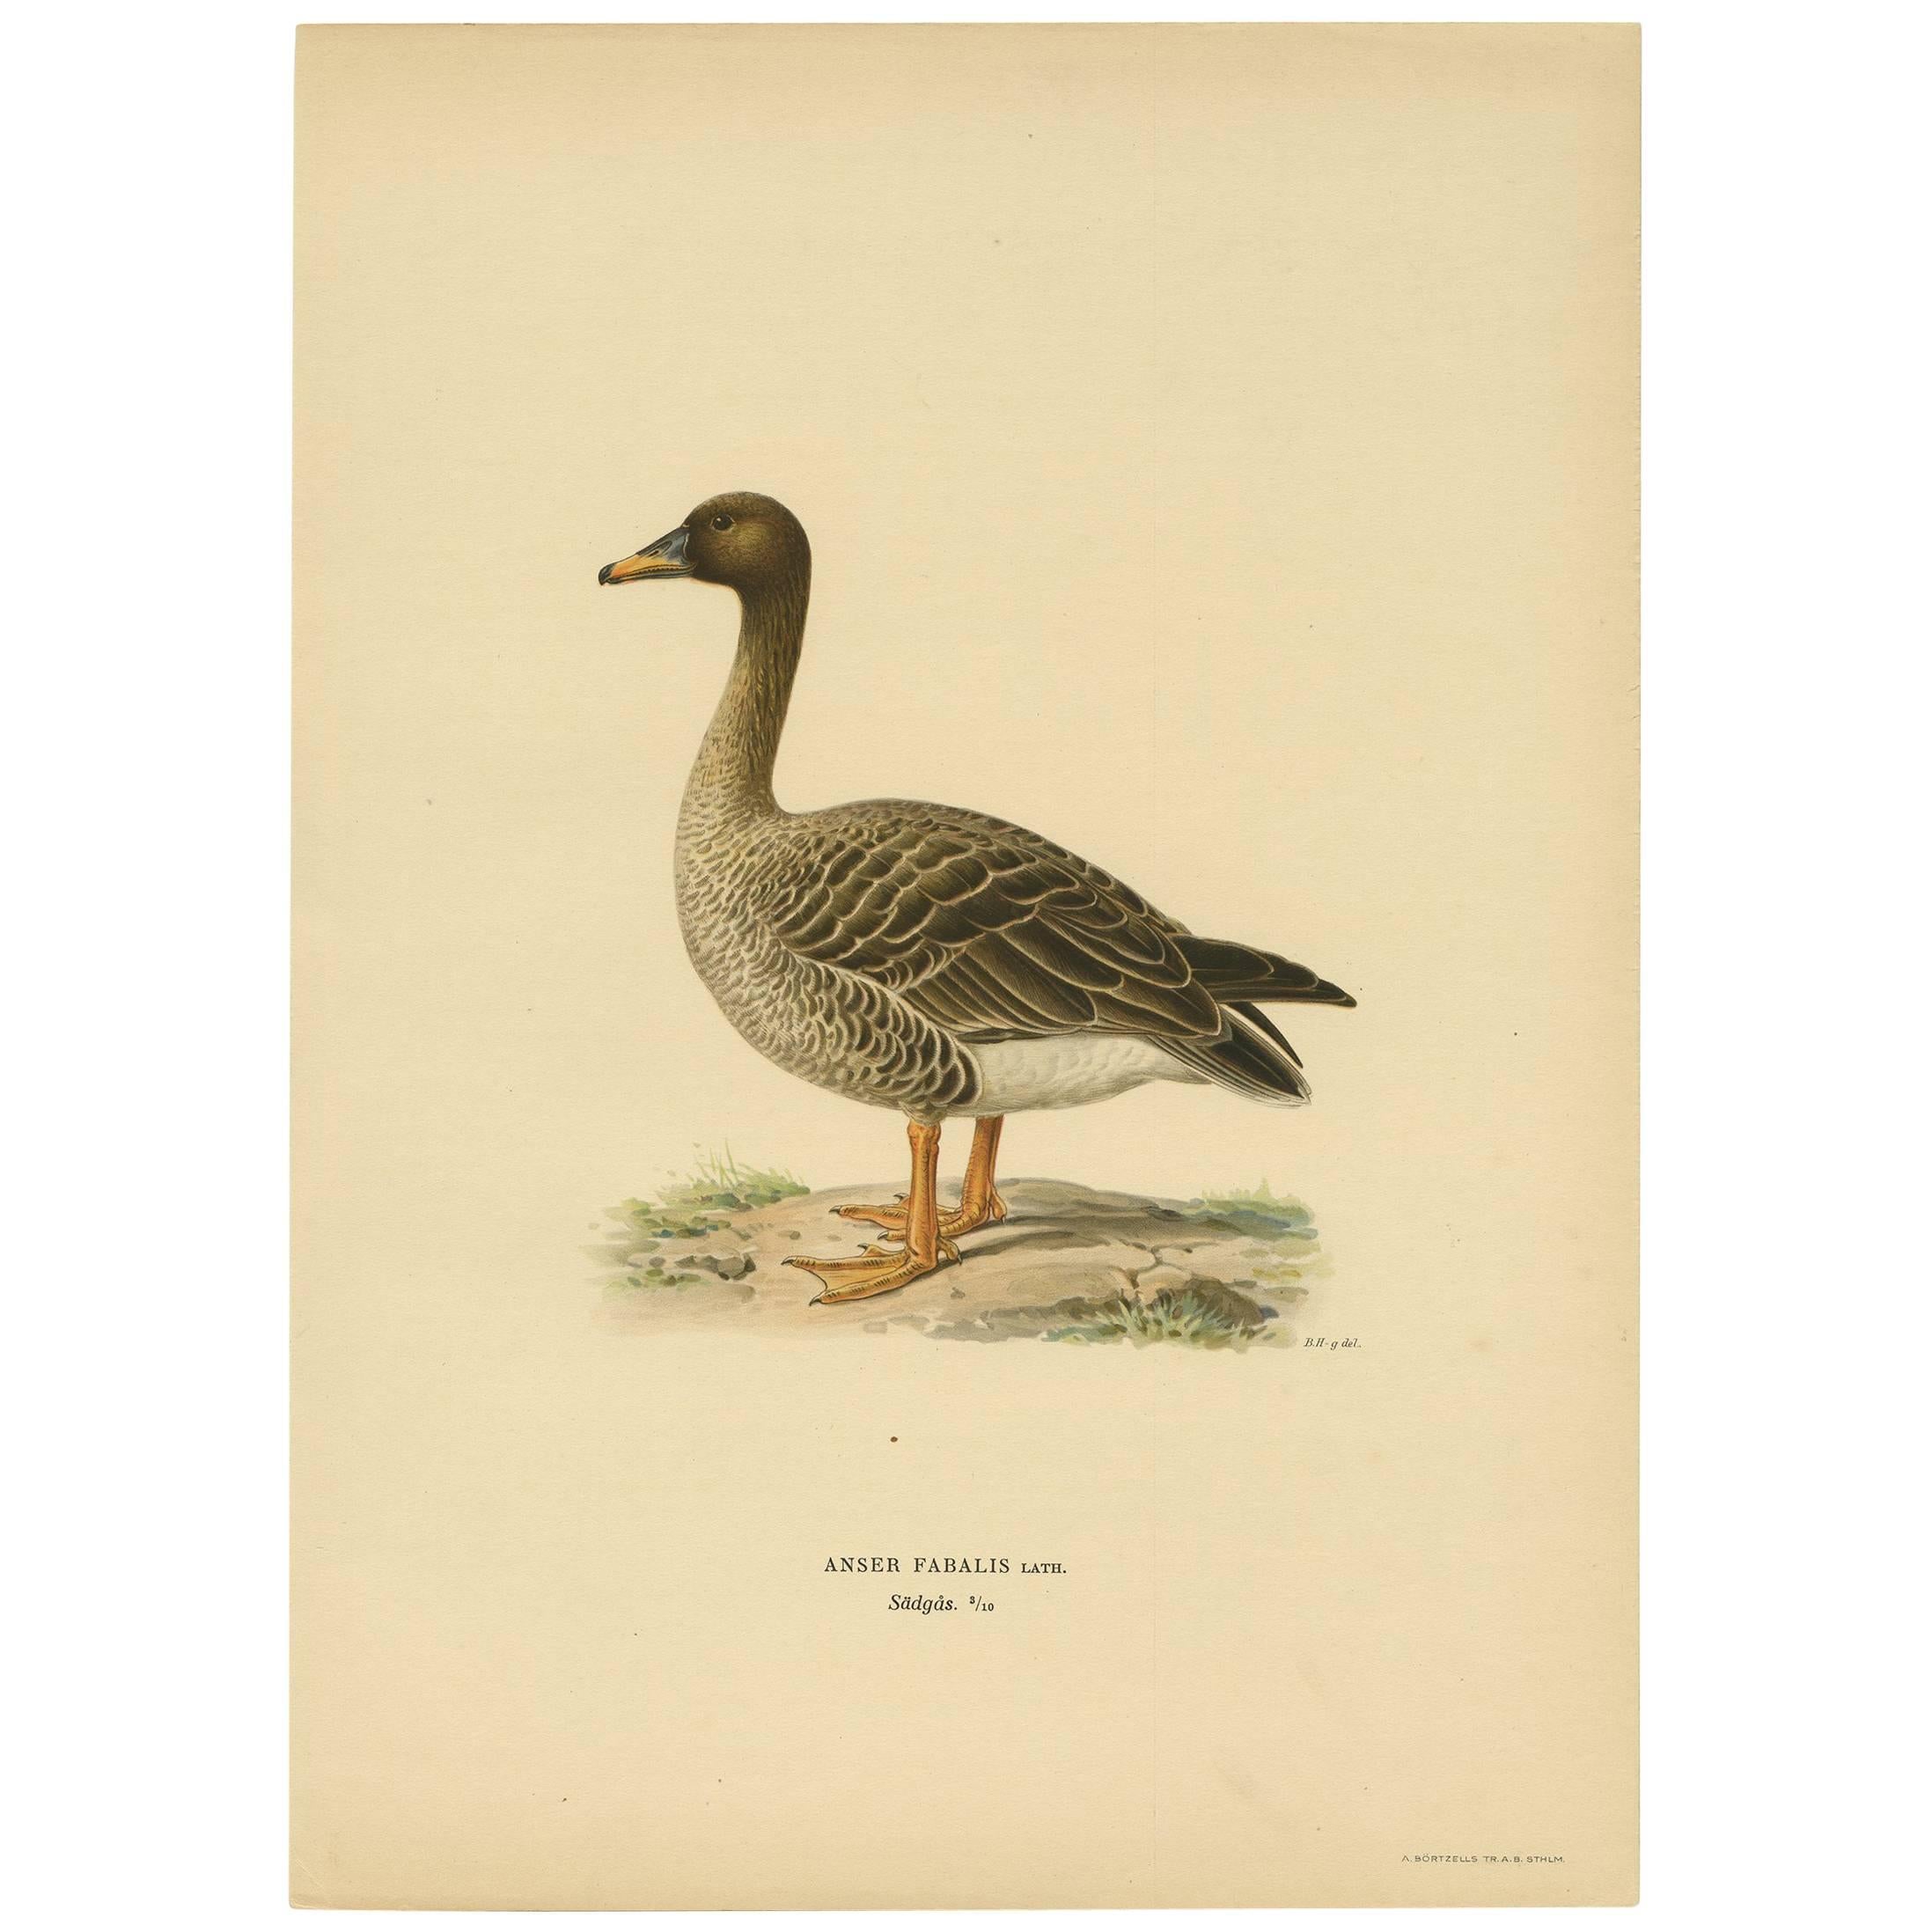 Antique Bird Print of a Taiga Bean Goose ‘Anser Fabalis’, 1917